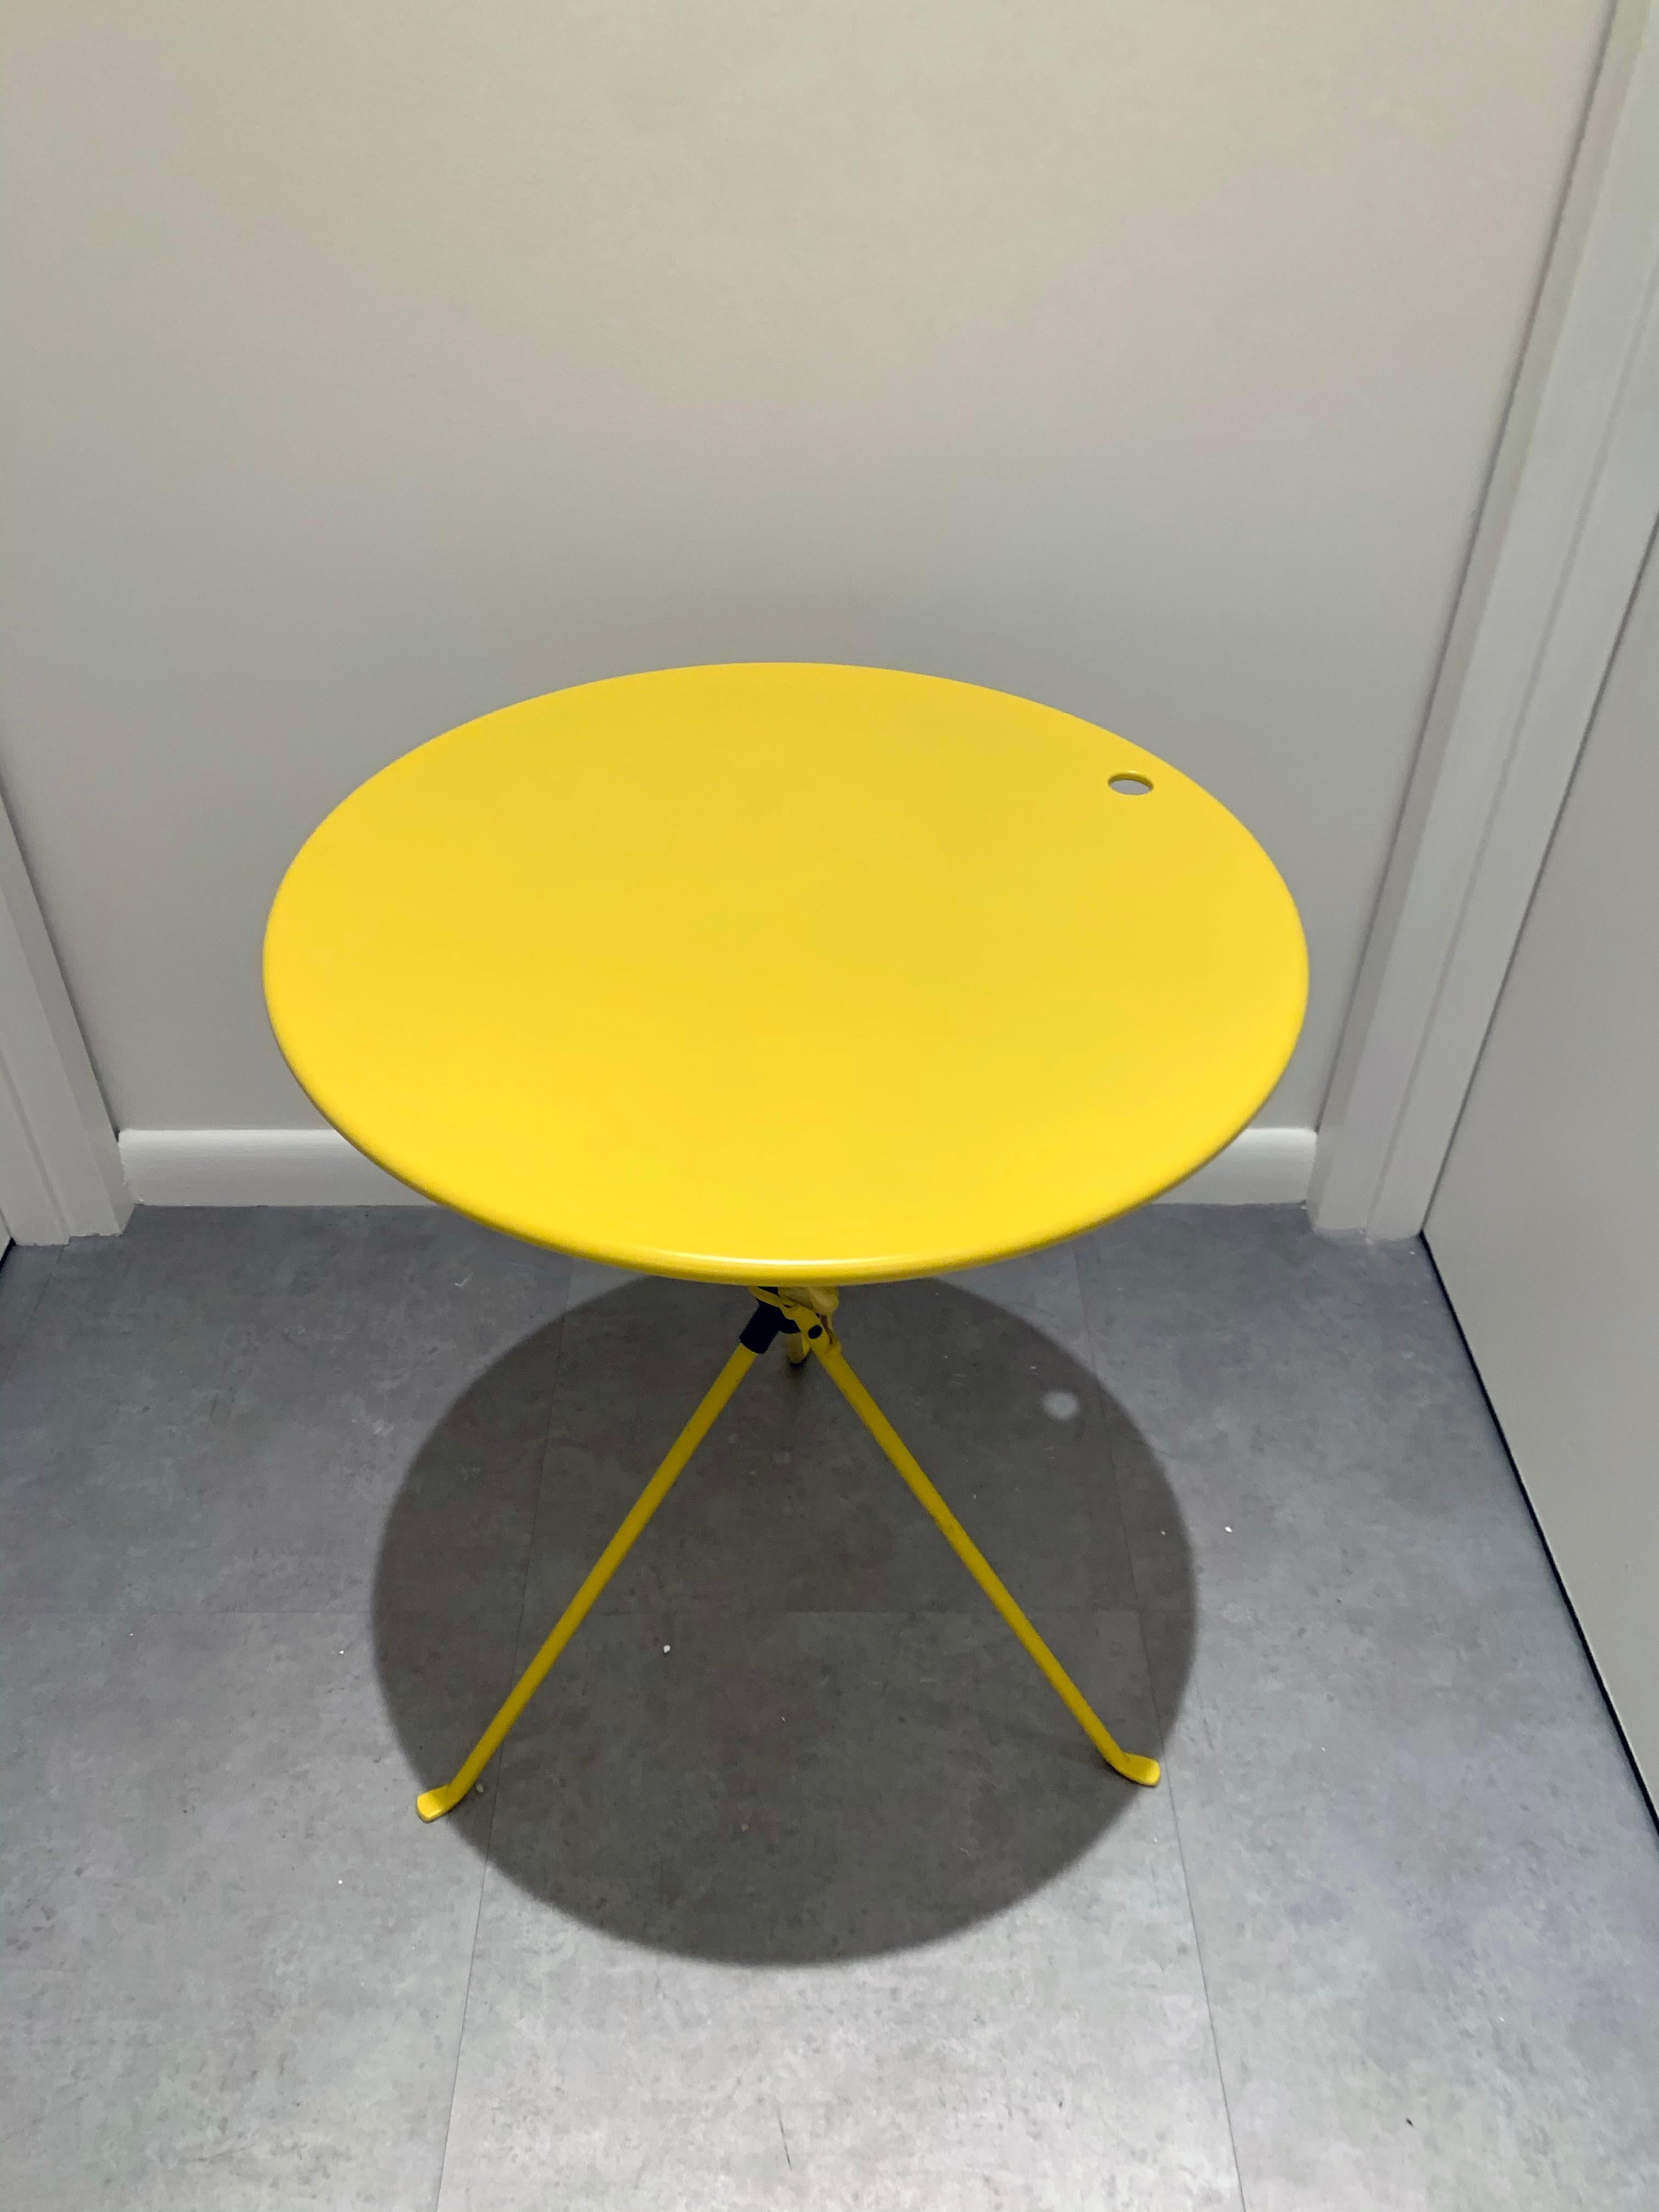 Contemporary Zanotta Cumano Yellow Folding table designed by Achille Castiglioni